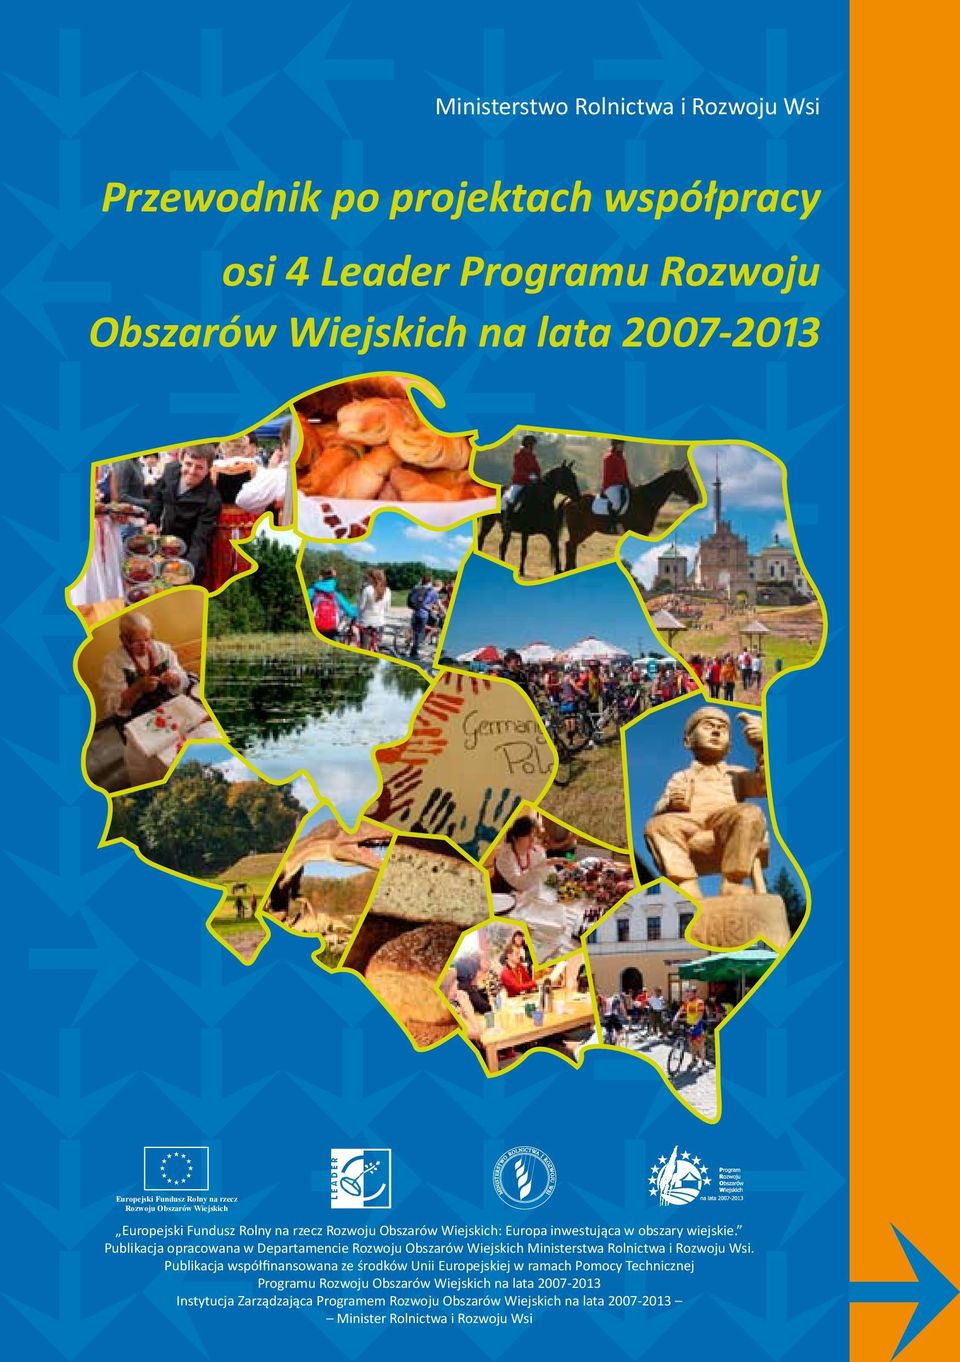 Publikacja opracowana w Departamencie Rozwoju Obszarów Wiejskich Ministerstwa Rolnictwa i Rozwoju Wsi.